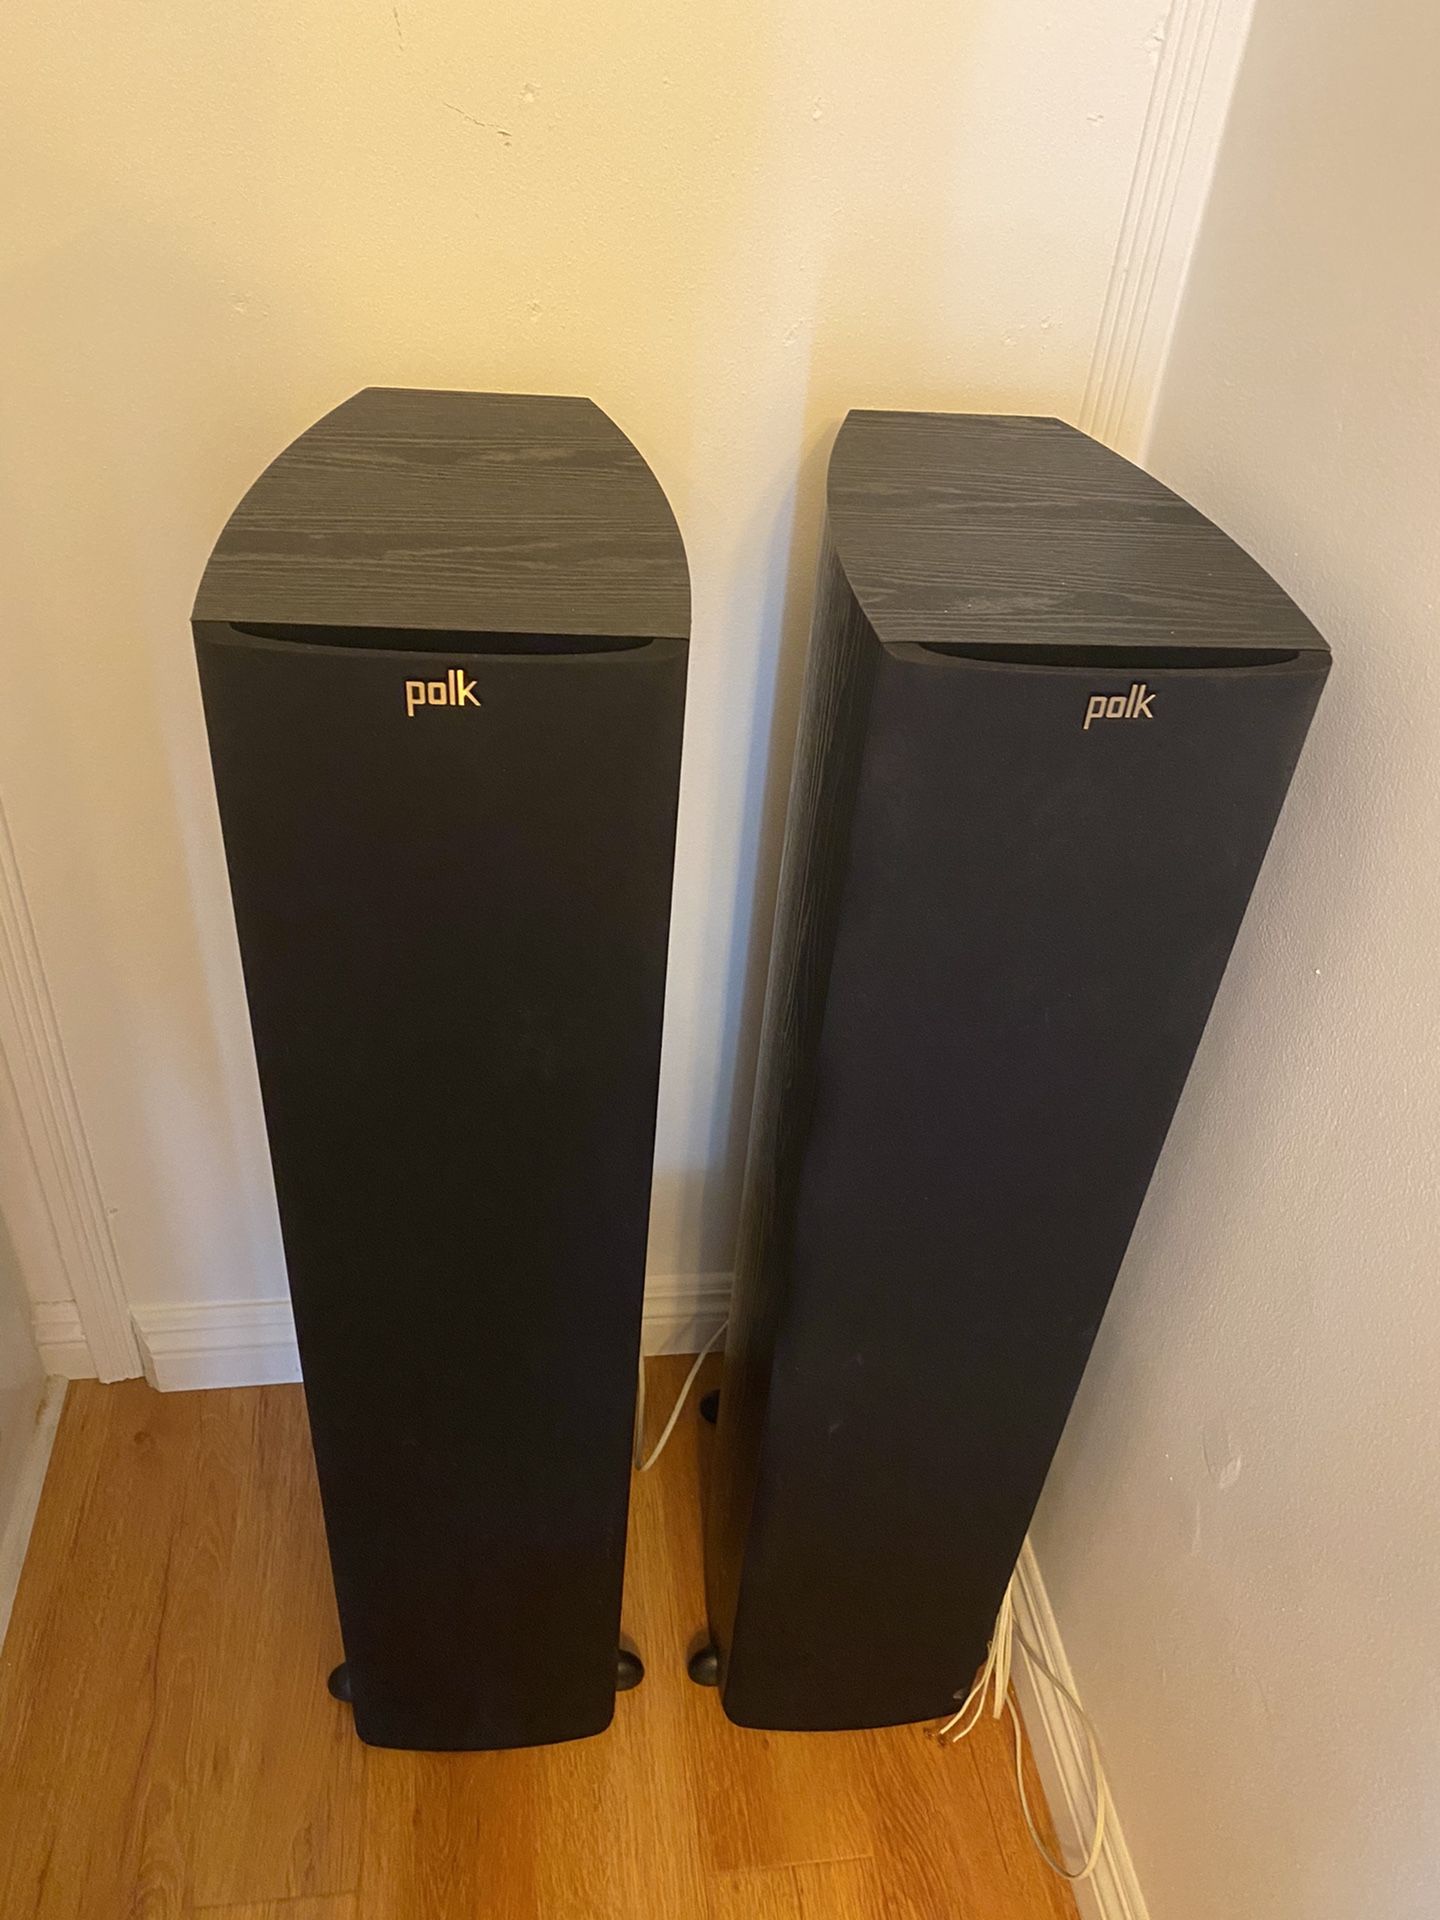 Polk Audio TSX 330t floorstanding speakers